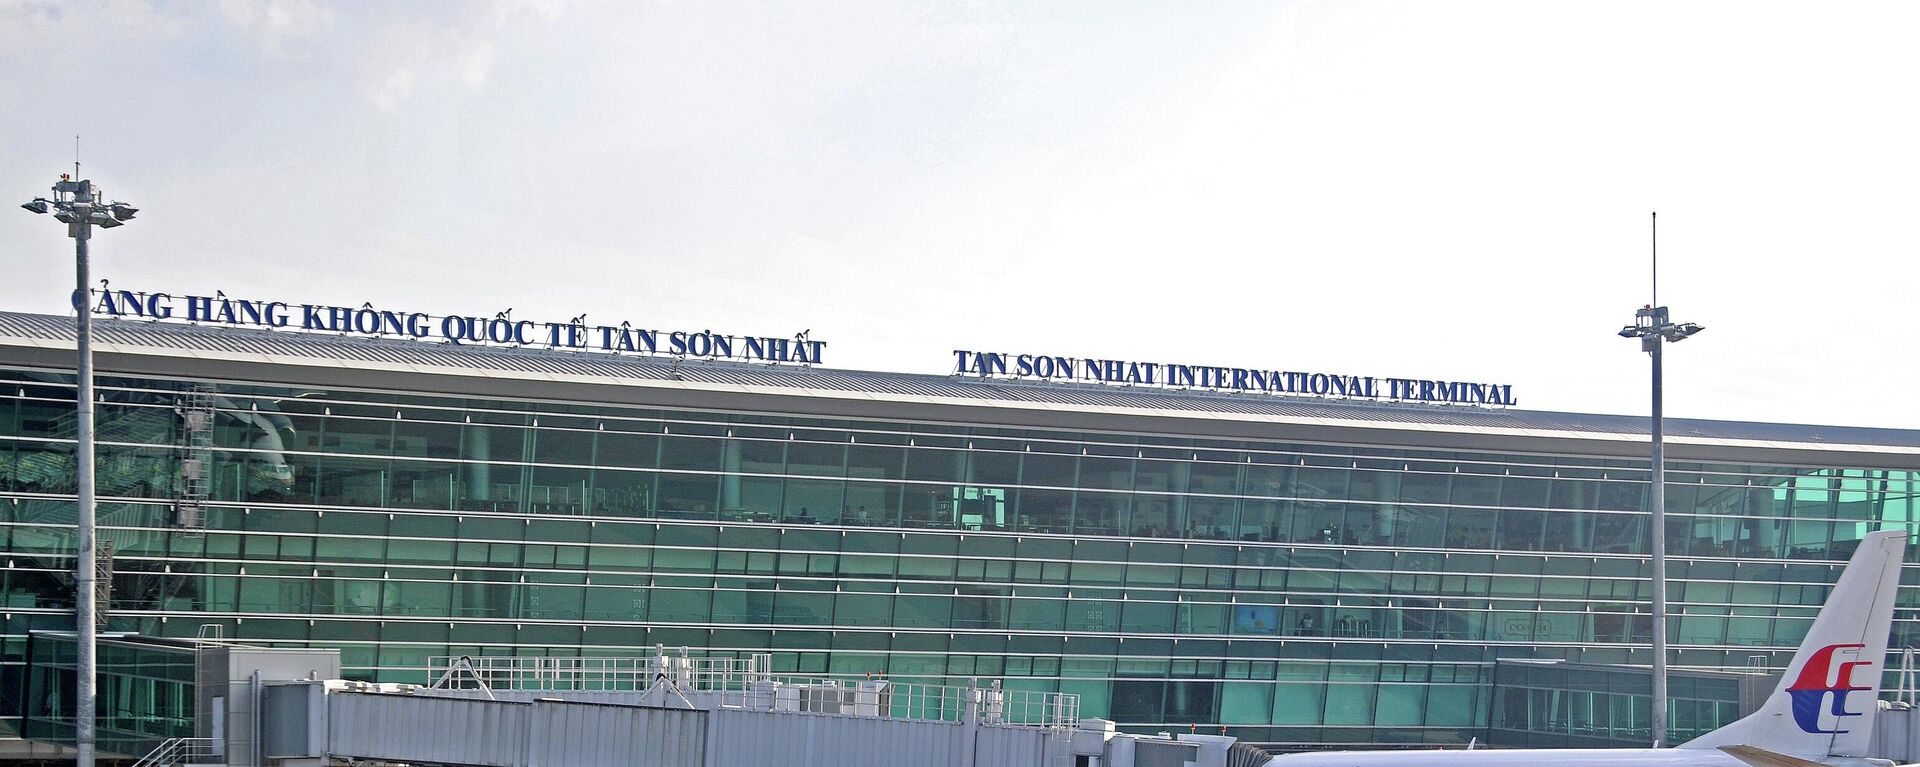 Аэропорт Tan Son Nhat в Хошимине, Вьетнам  - Sputnik Việt Nam, 1920, 09.01.2023